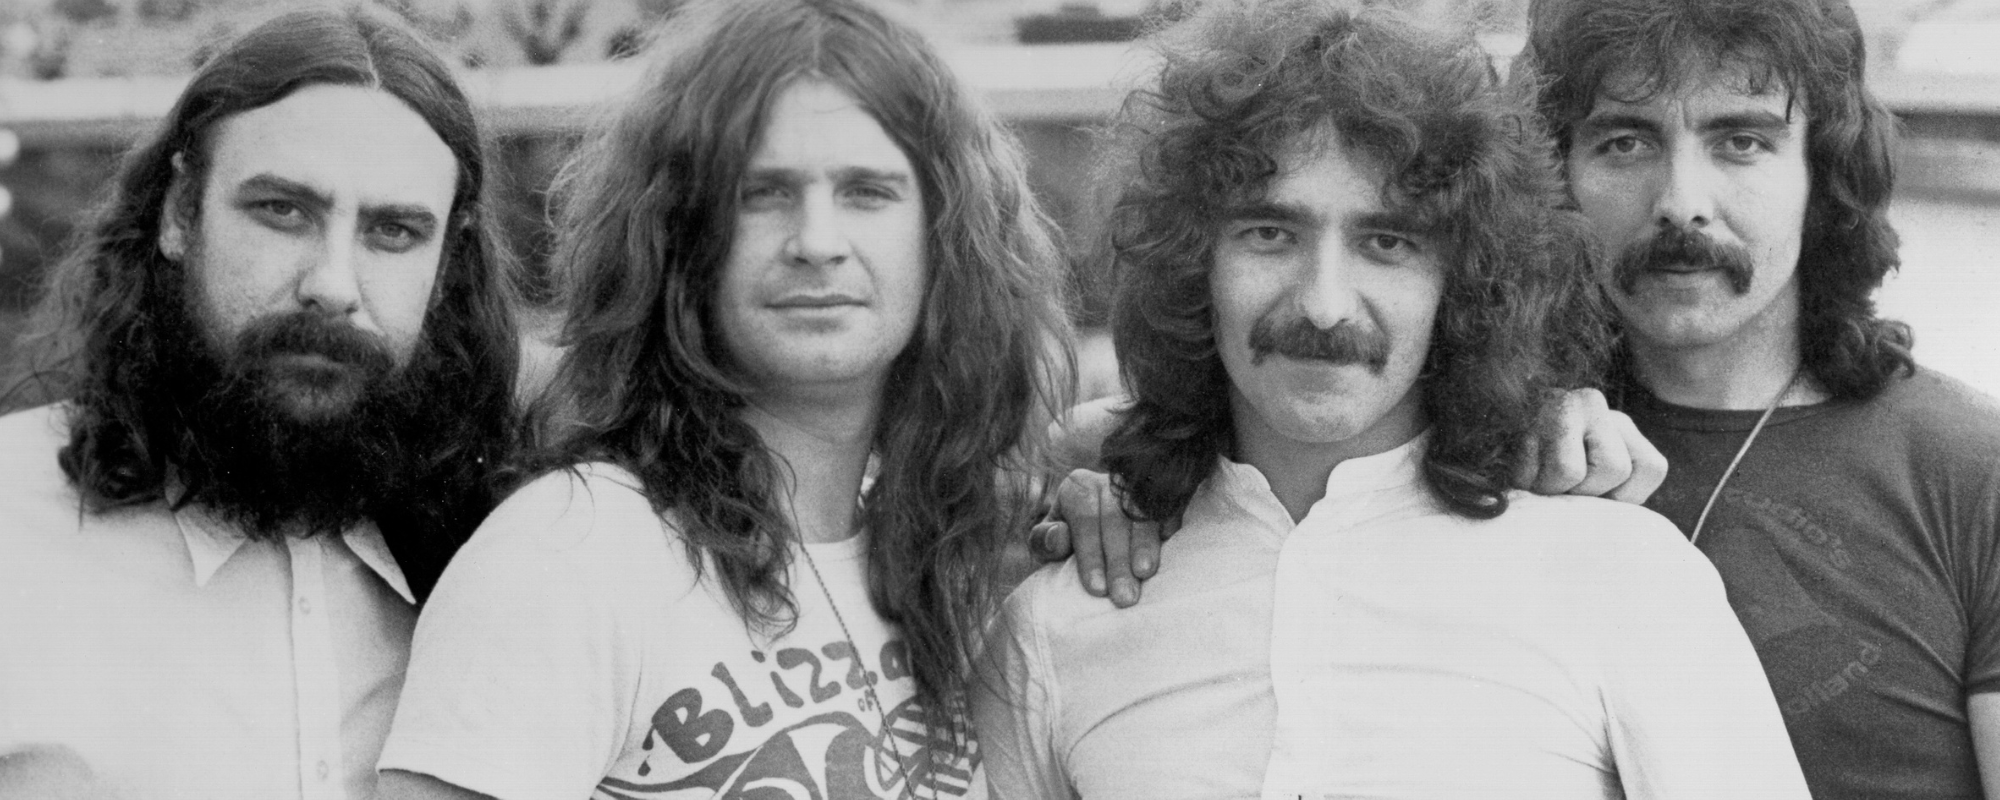 Black Sabbath members posing together